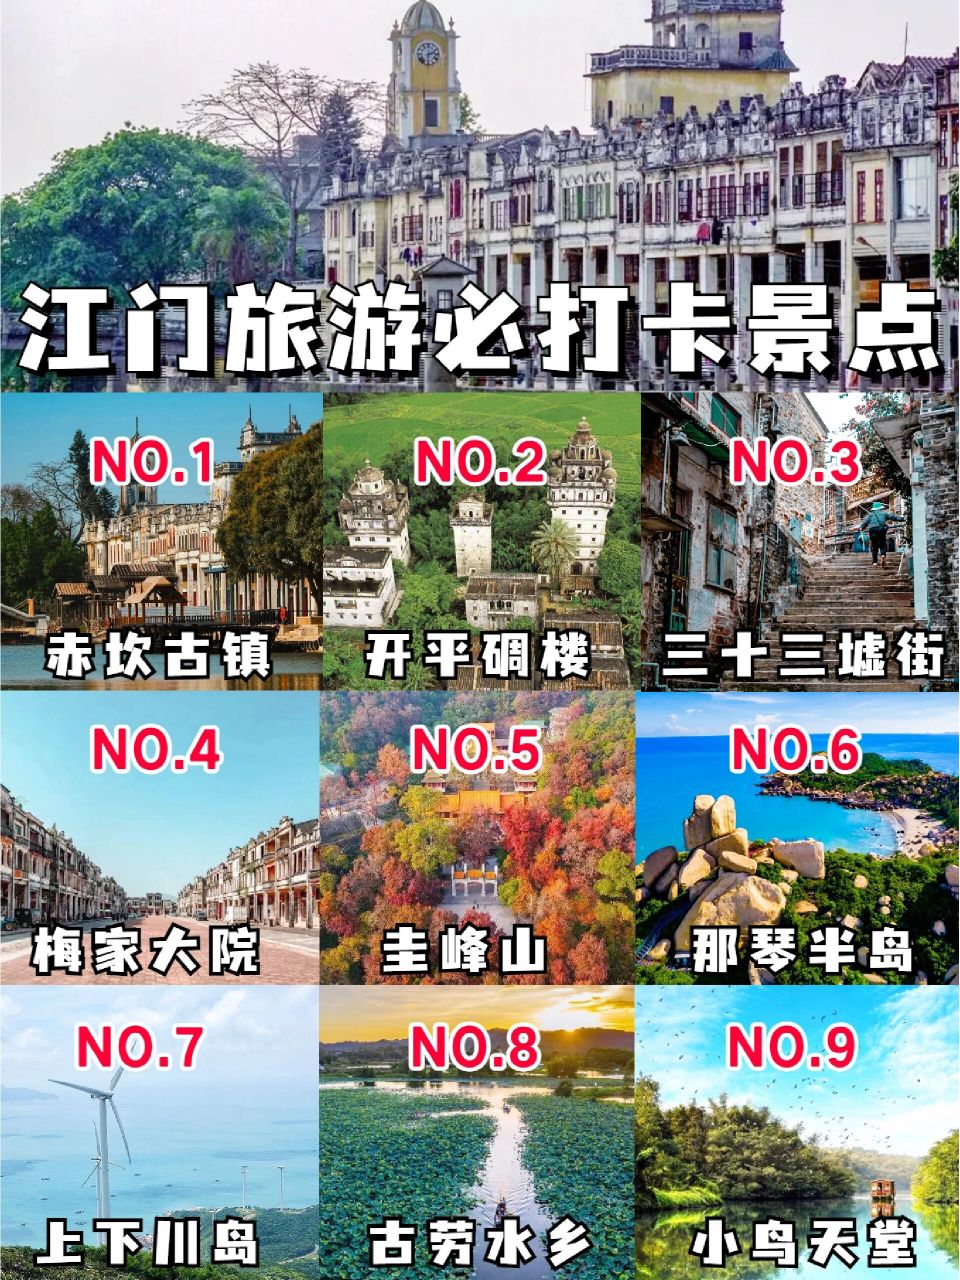 江门旅游景点排名图片